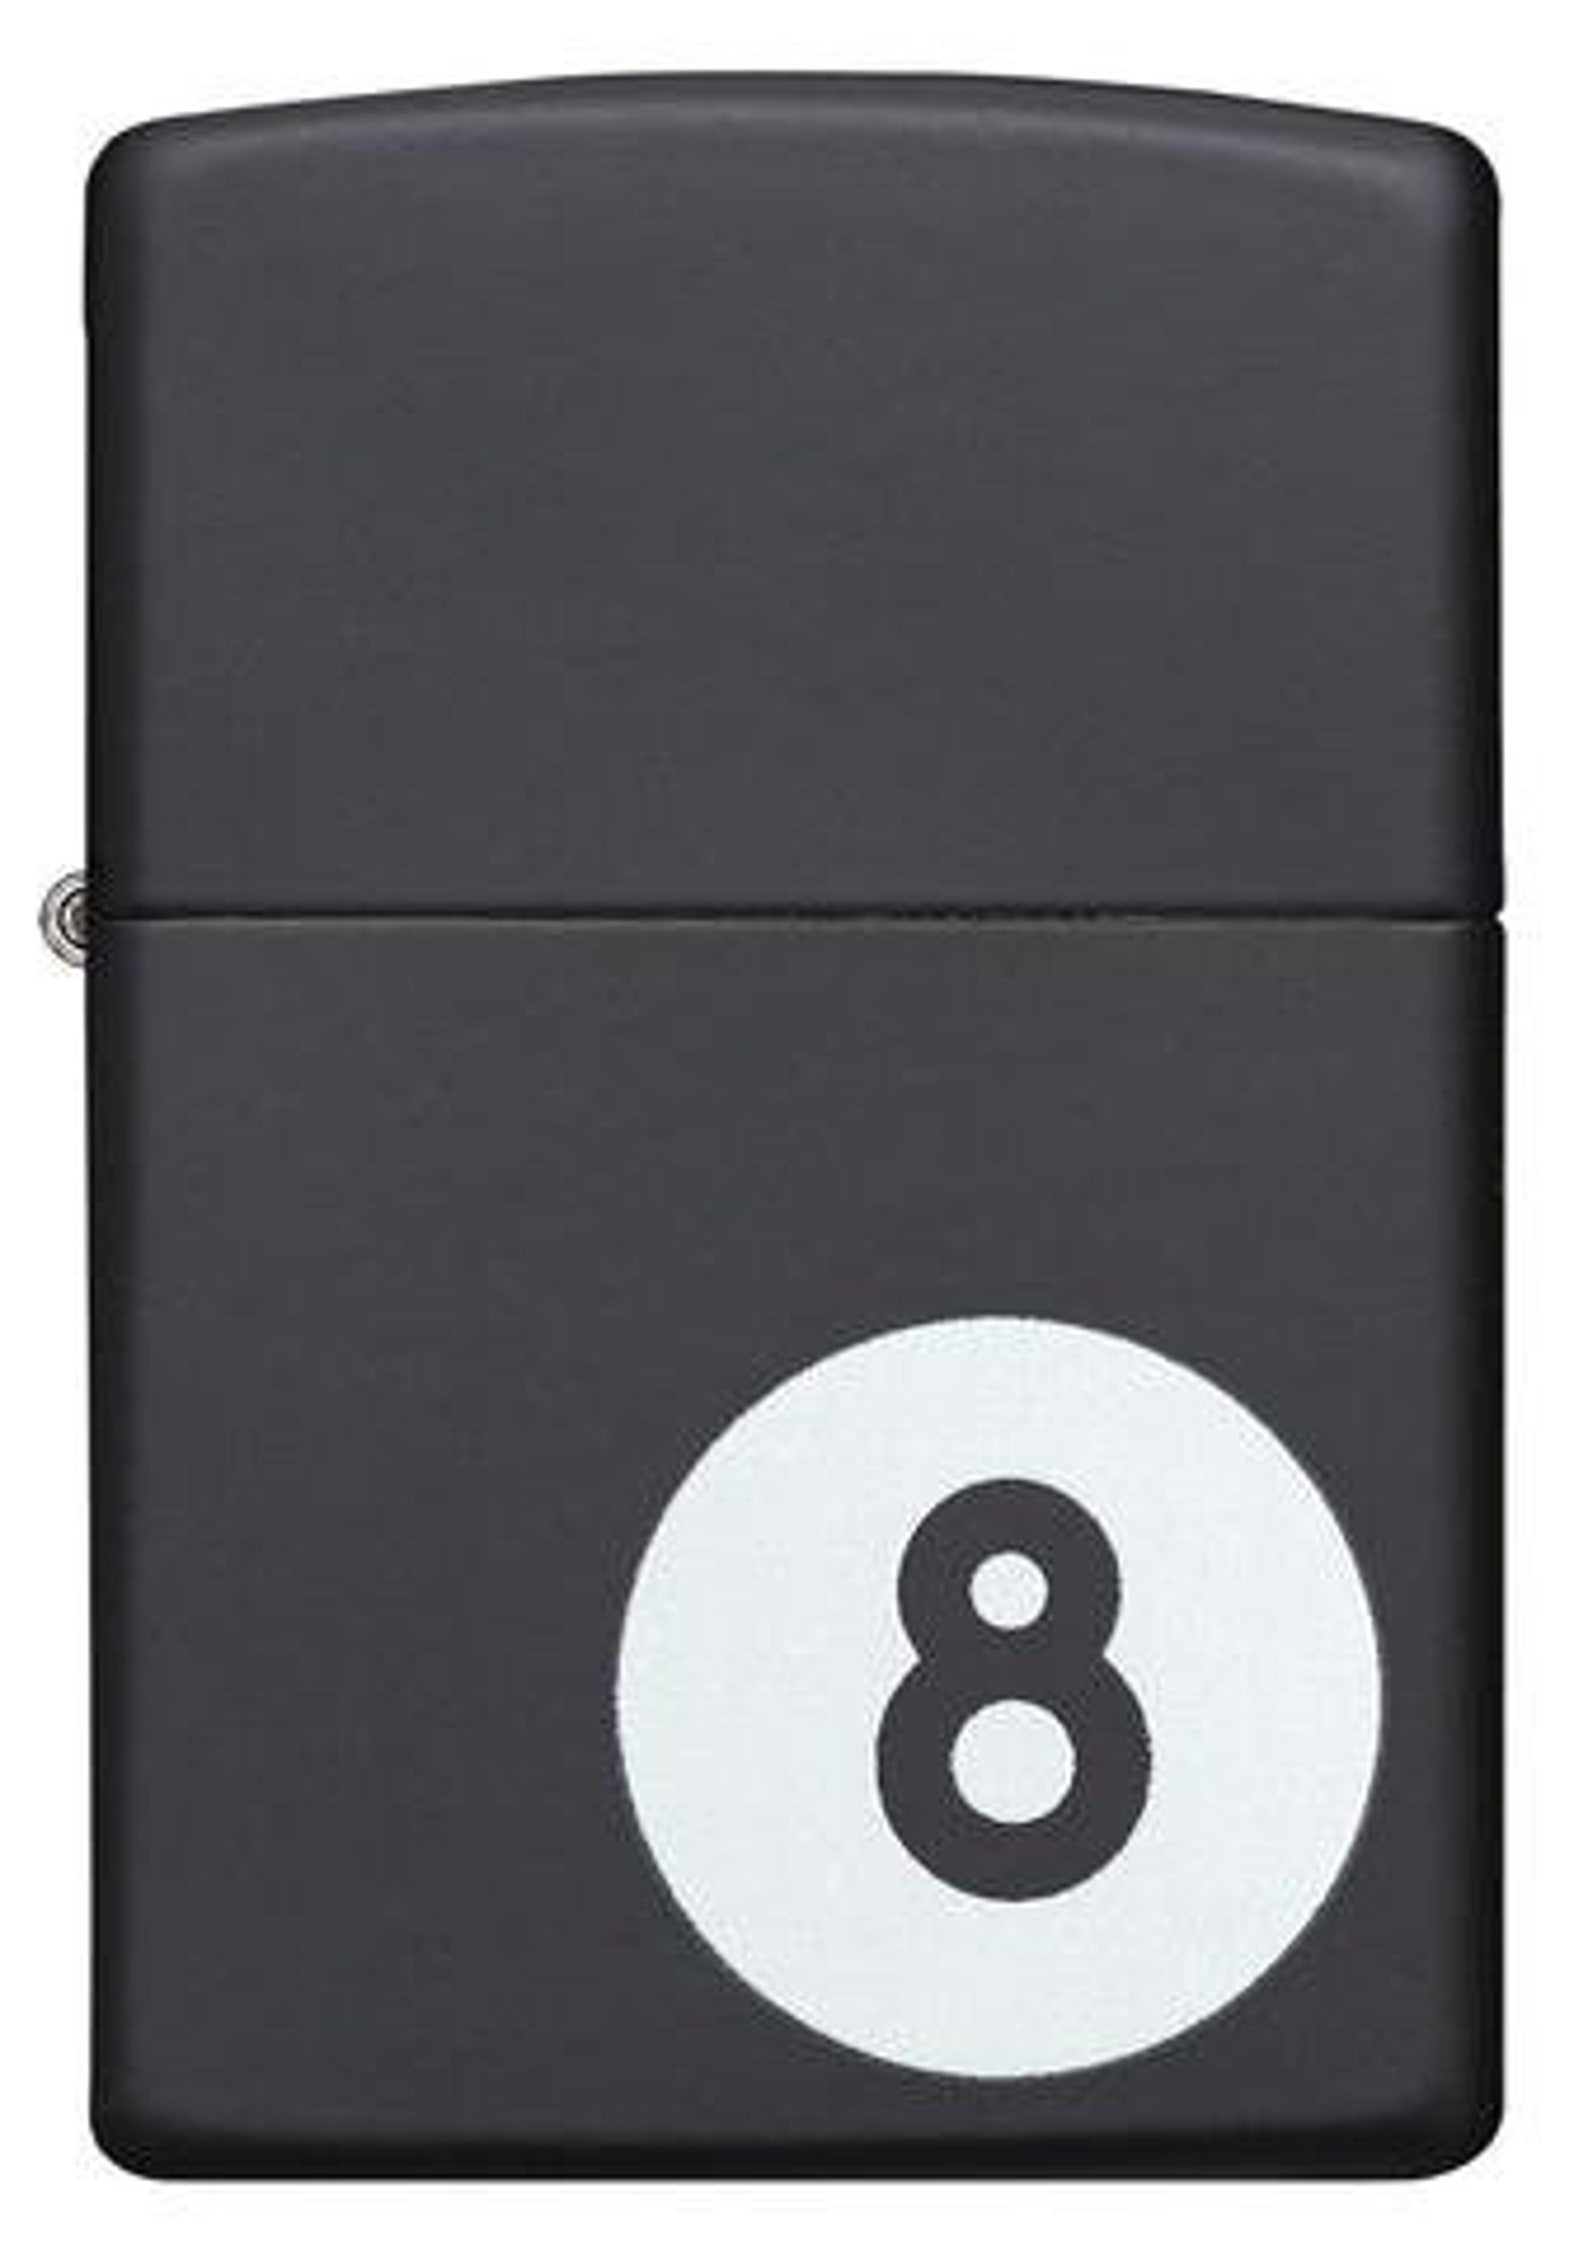 Zippo 8 Ball Lighter | Etsy